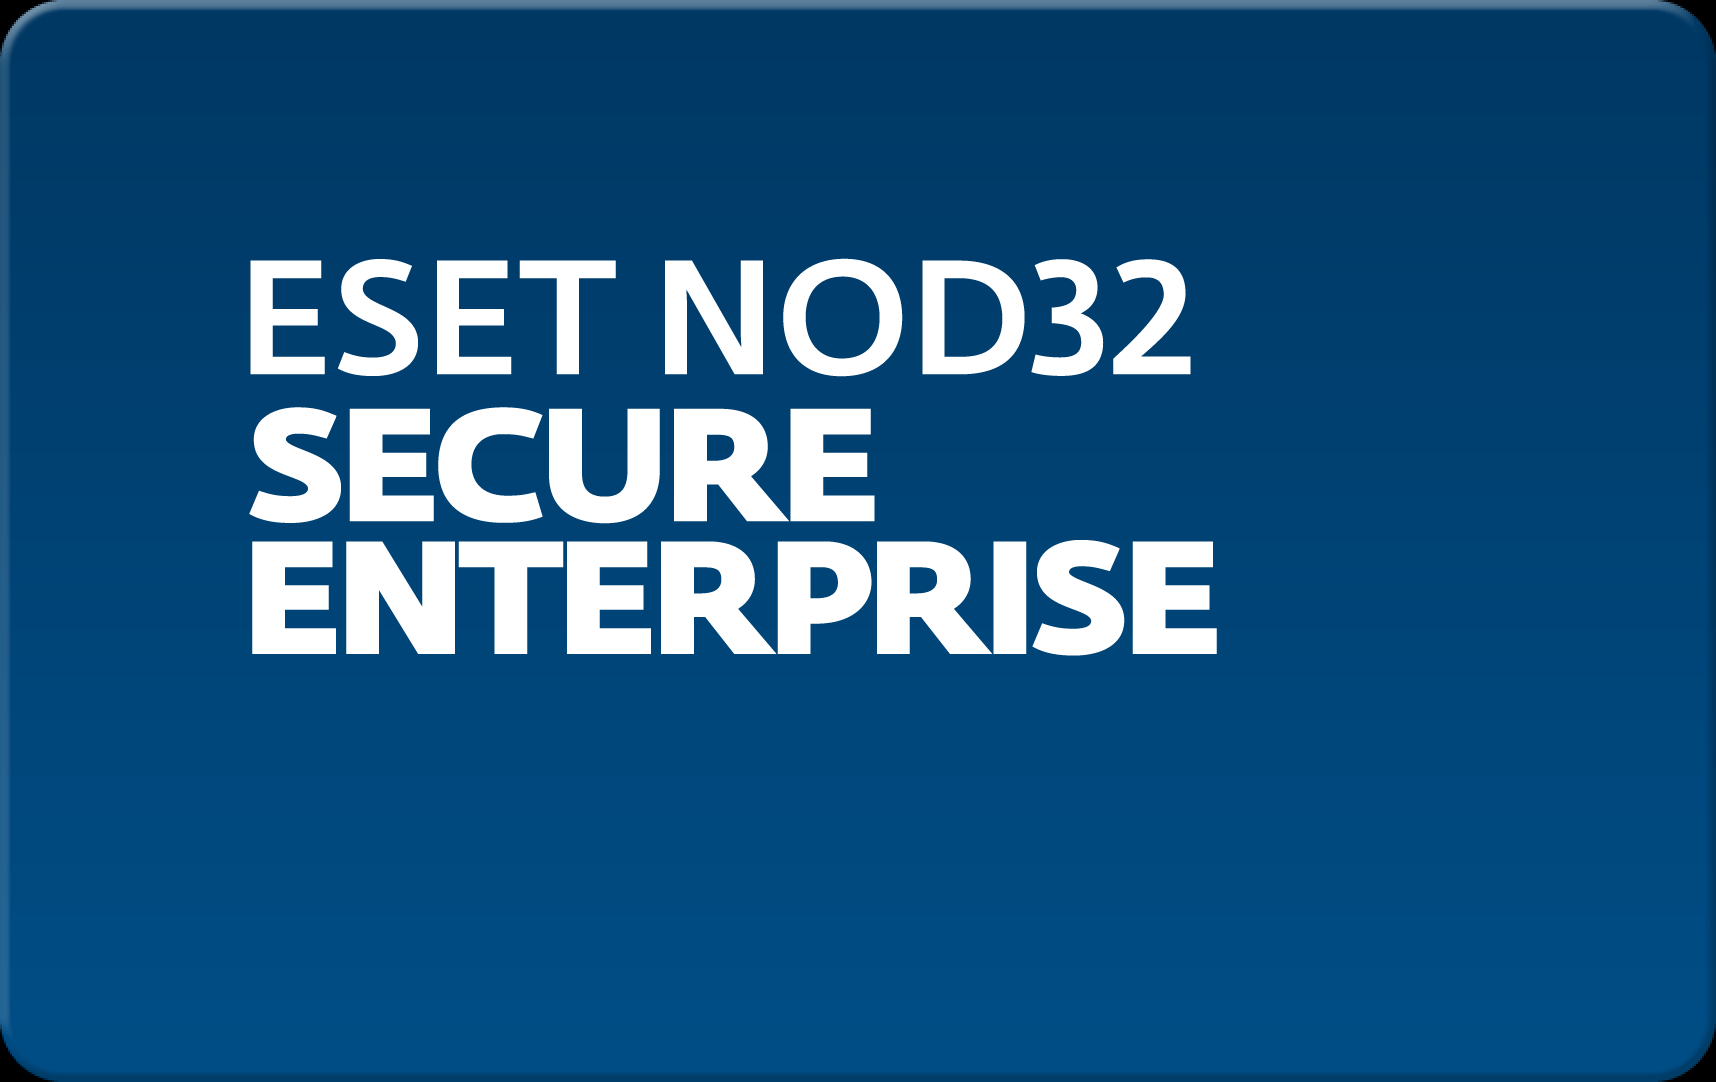        Eset NOD32 Secure Enterprise  161 